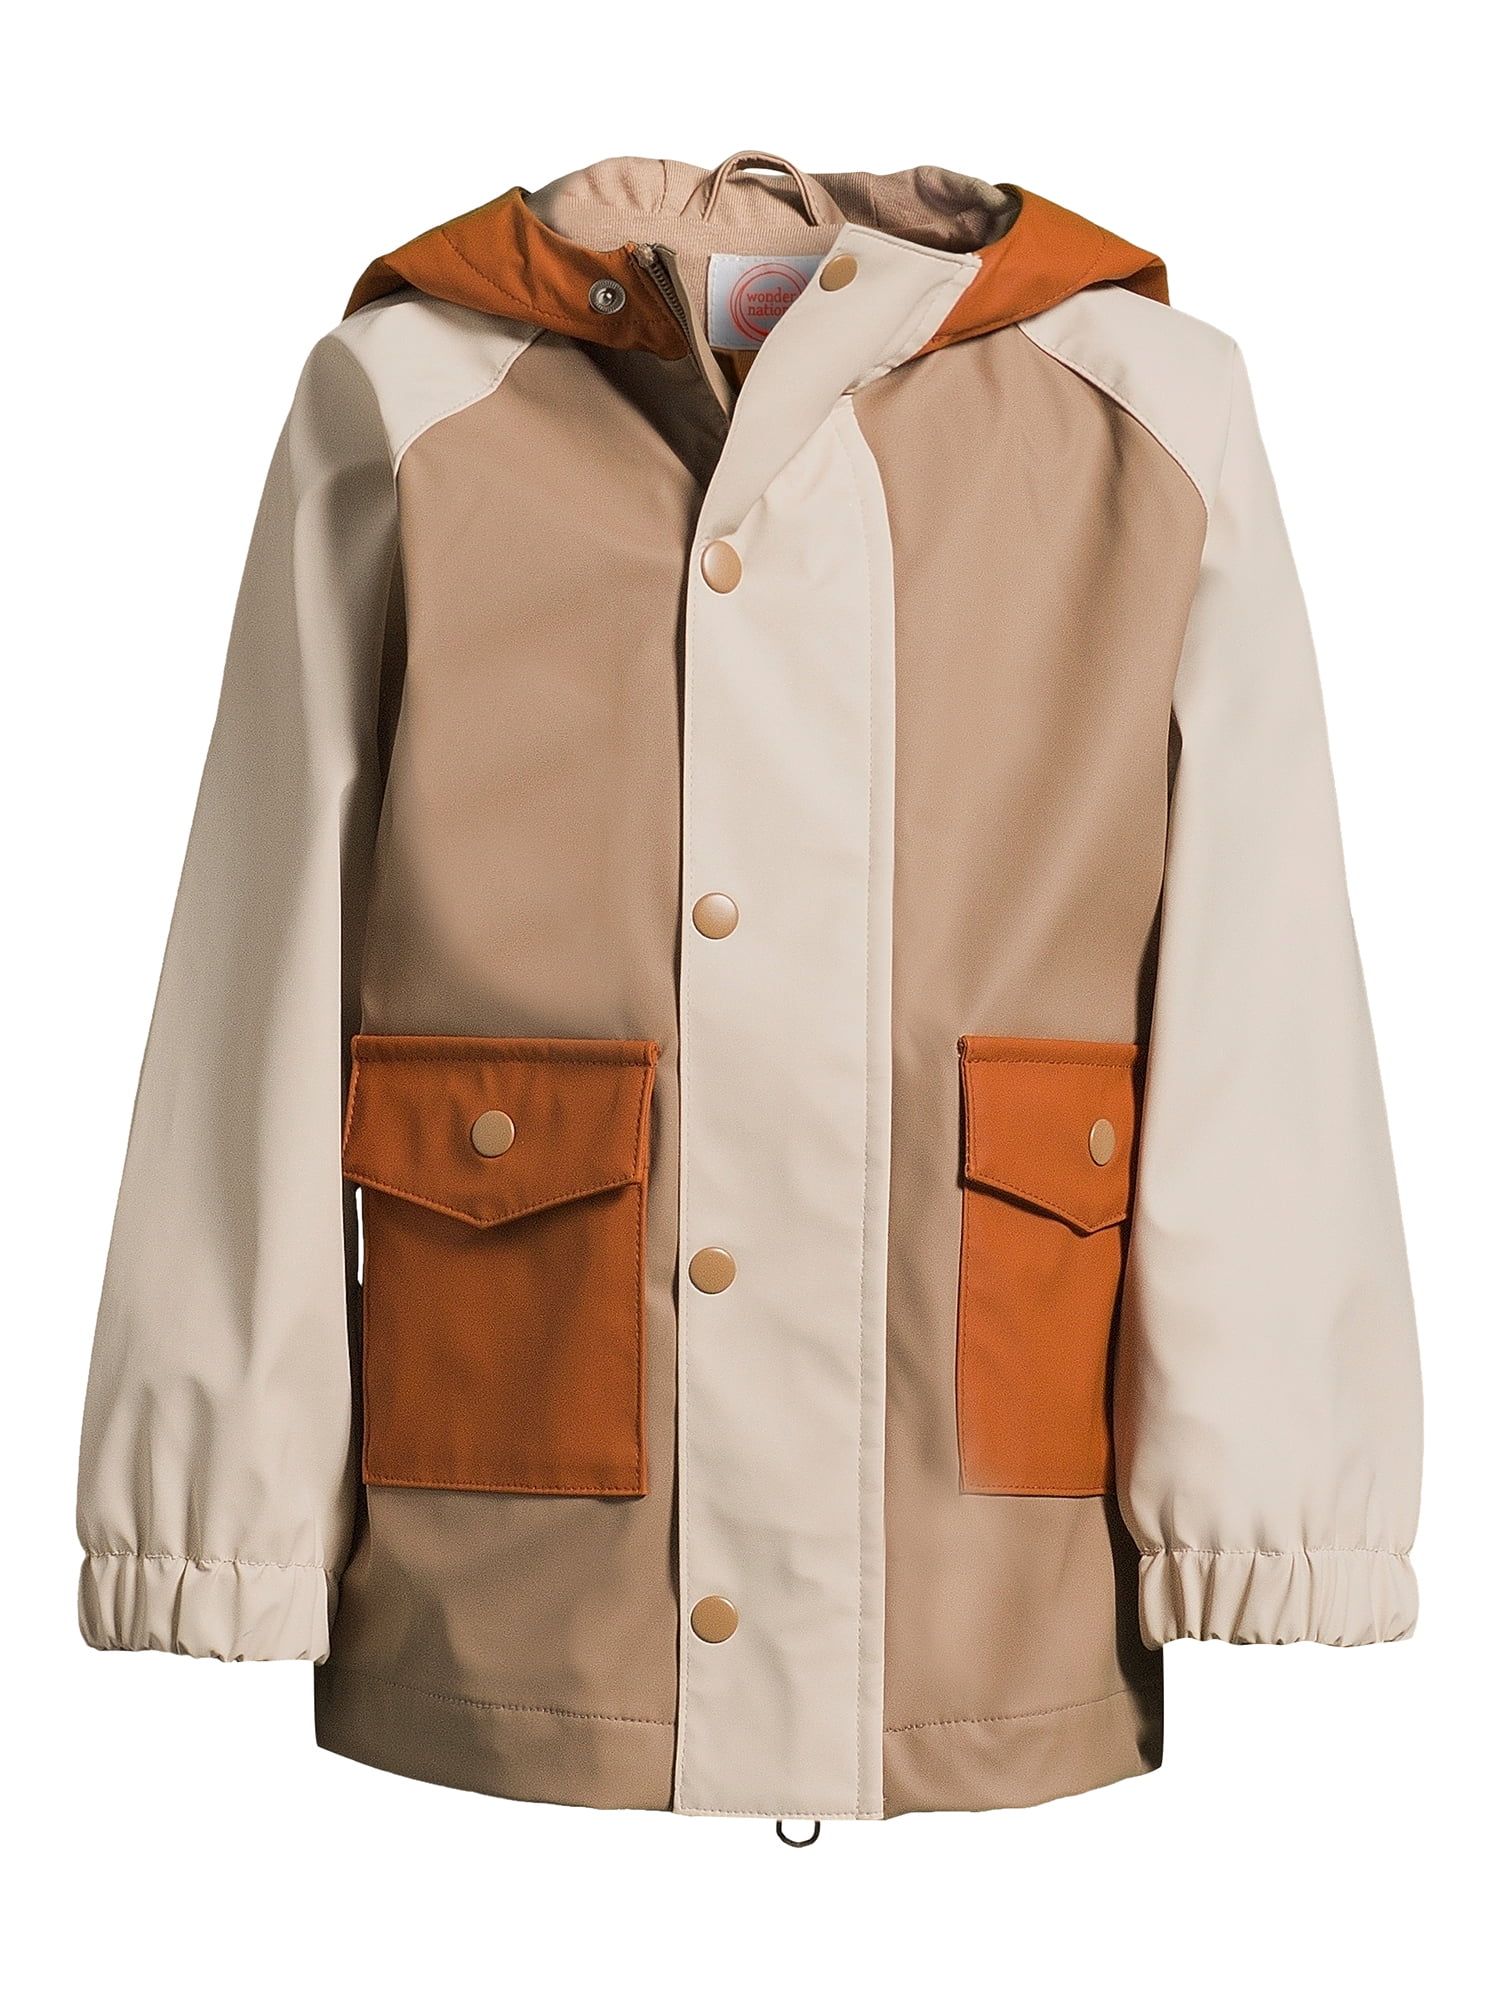 Wonder Nation Toddler Rain Jacket, Sizes 12M-5T | Walmart (US)